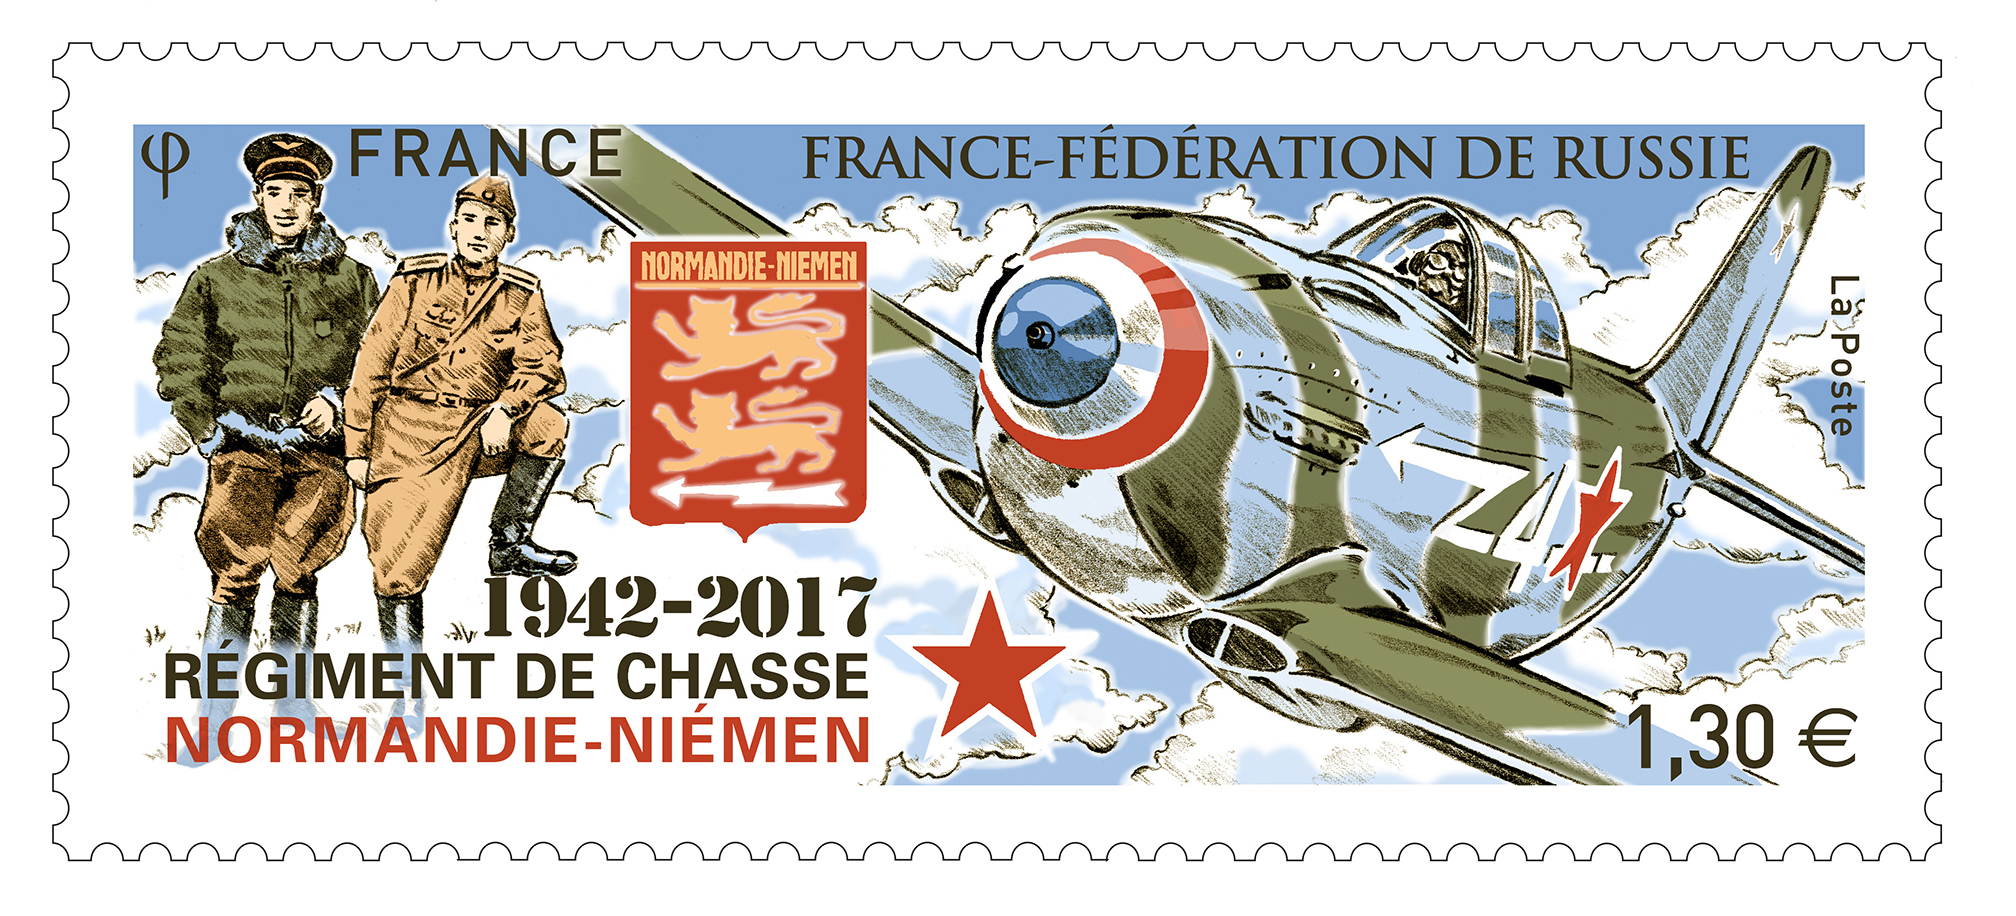 France-Fédération de Russie - 1942 - 2017 Régiment de chasse Normandie